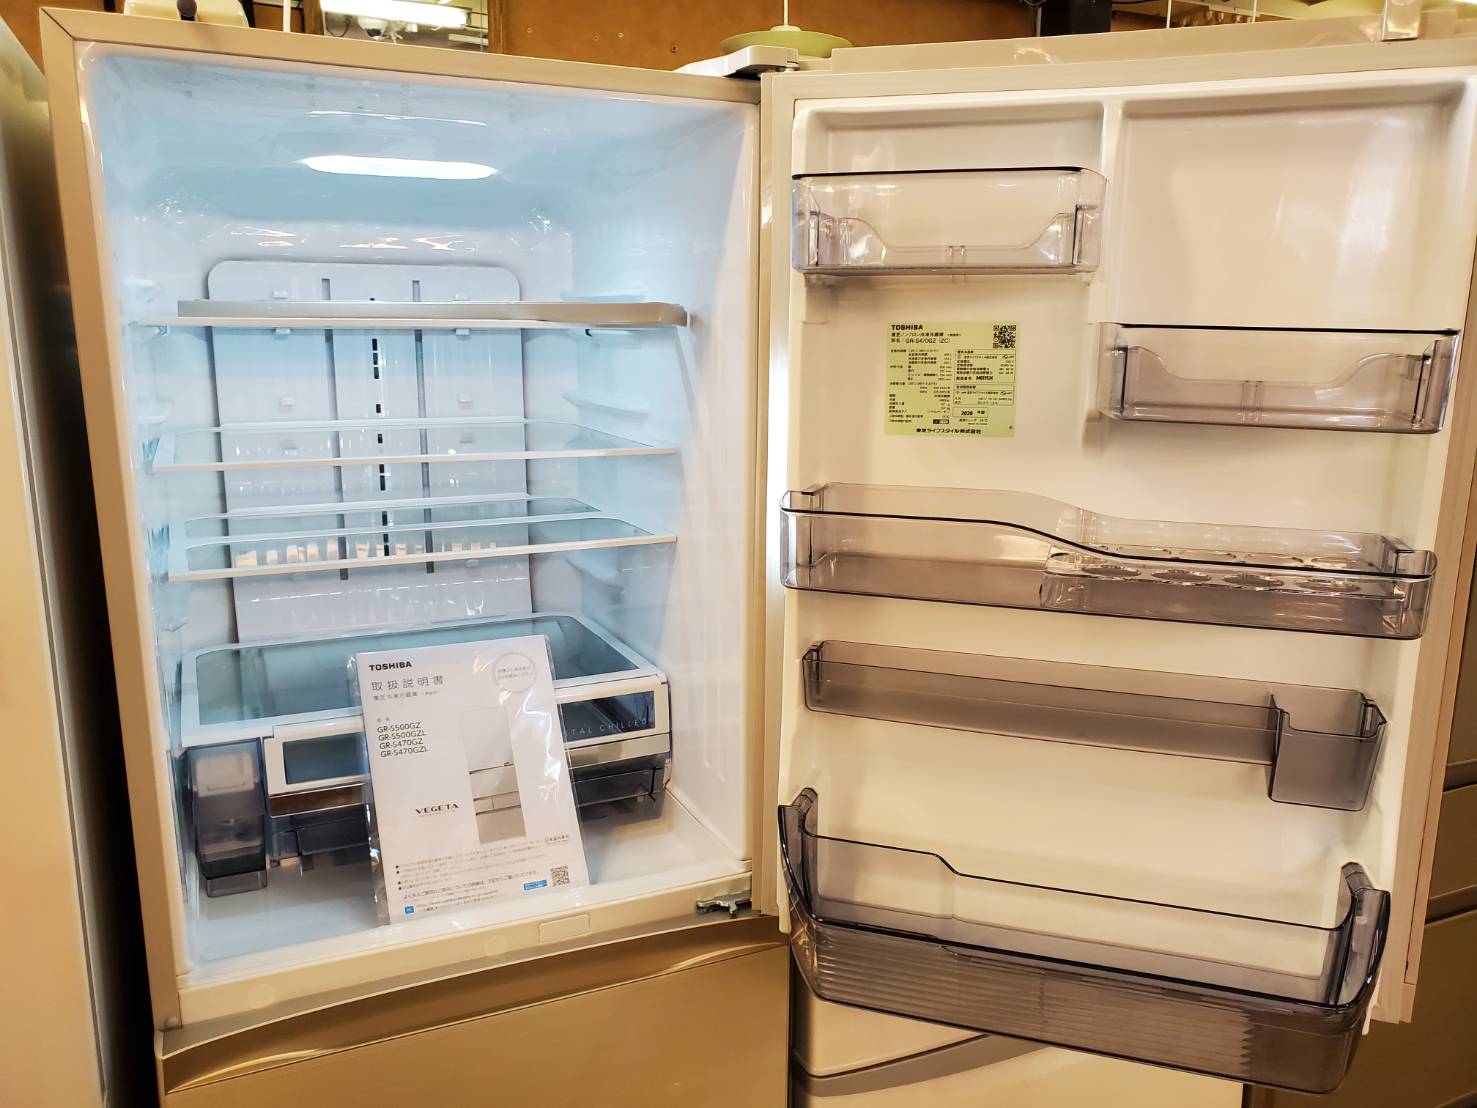 ☆品 東芝 VEGETA(ベジータ)2021年製 冷凍冷蔵庫 - キッチン家電